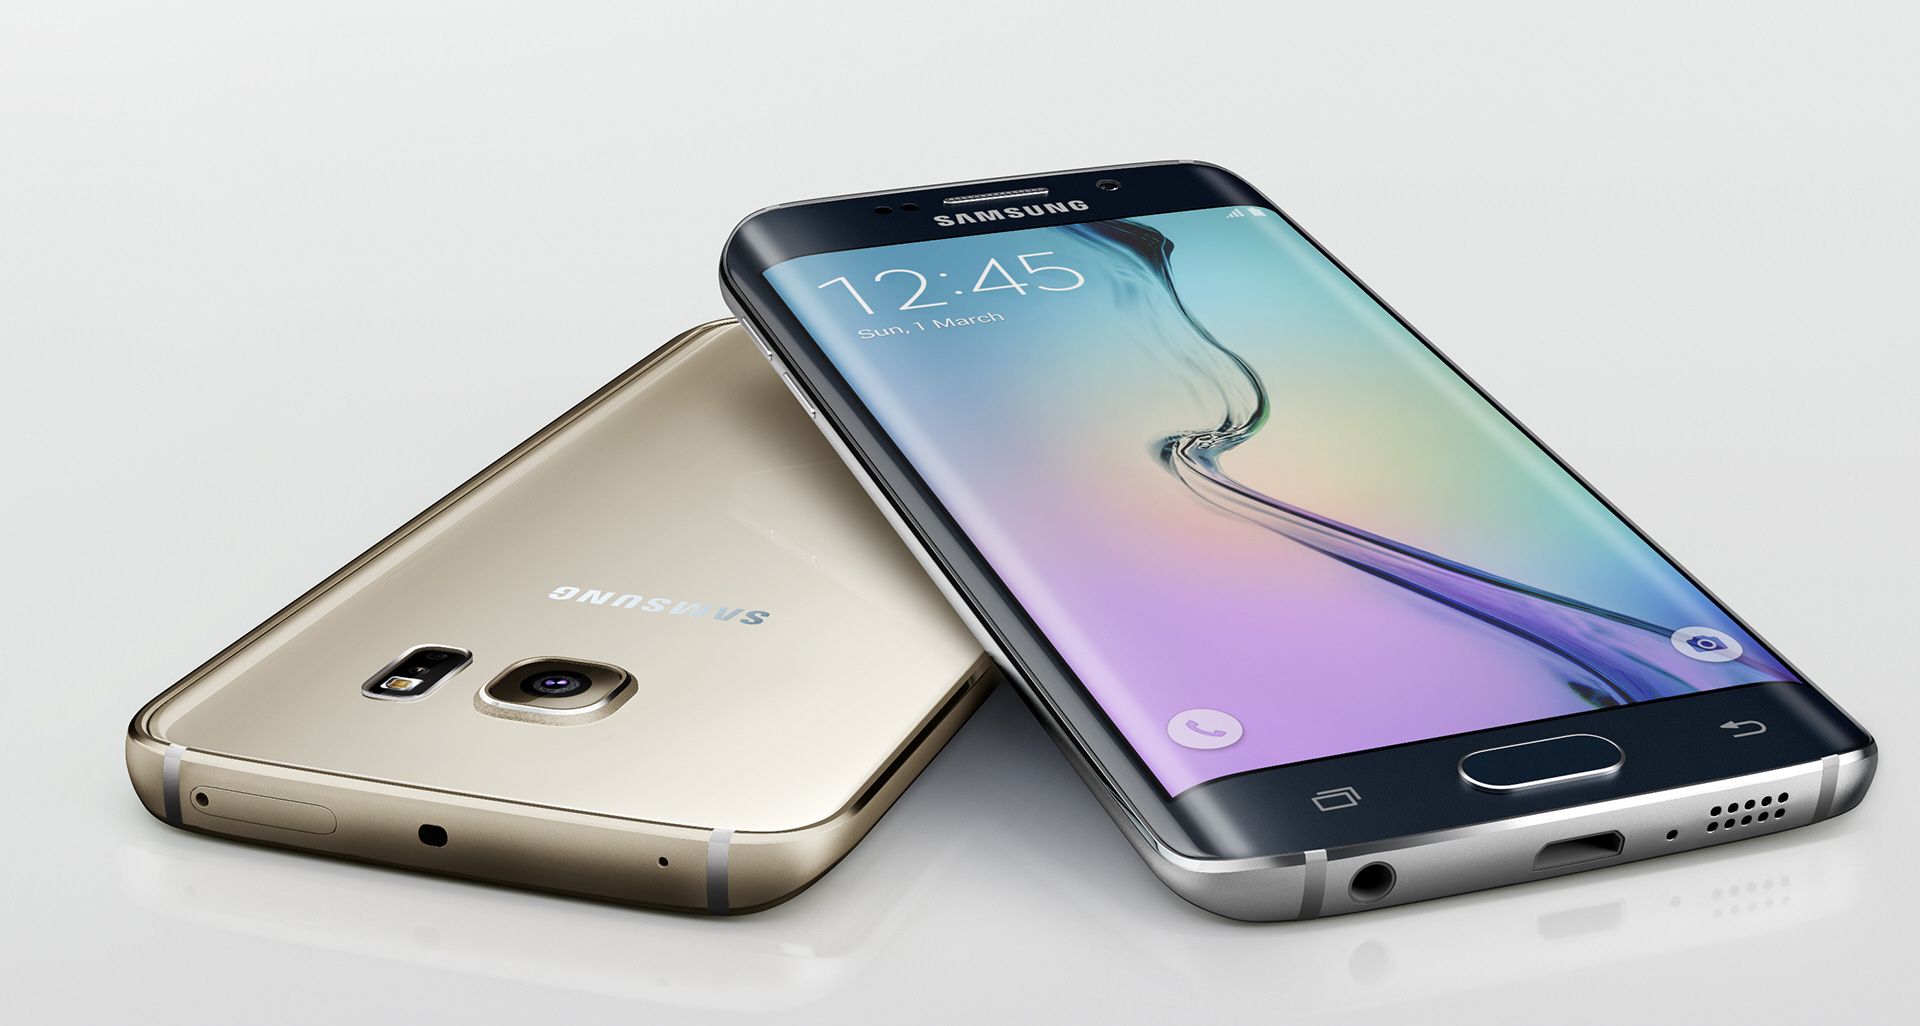 Le Samsung Galaxy S6 Edge est en promotion à 462€